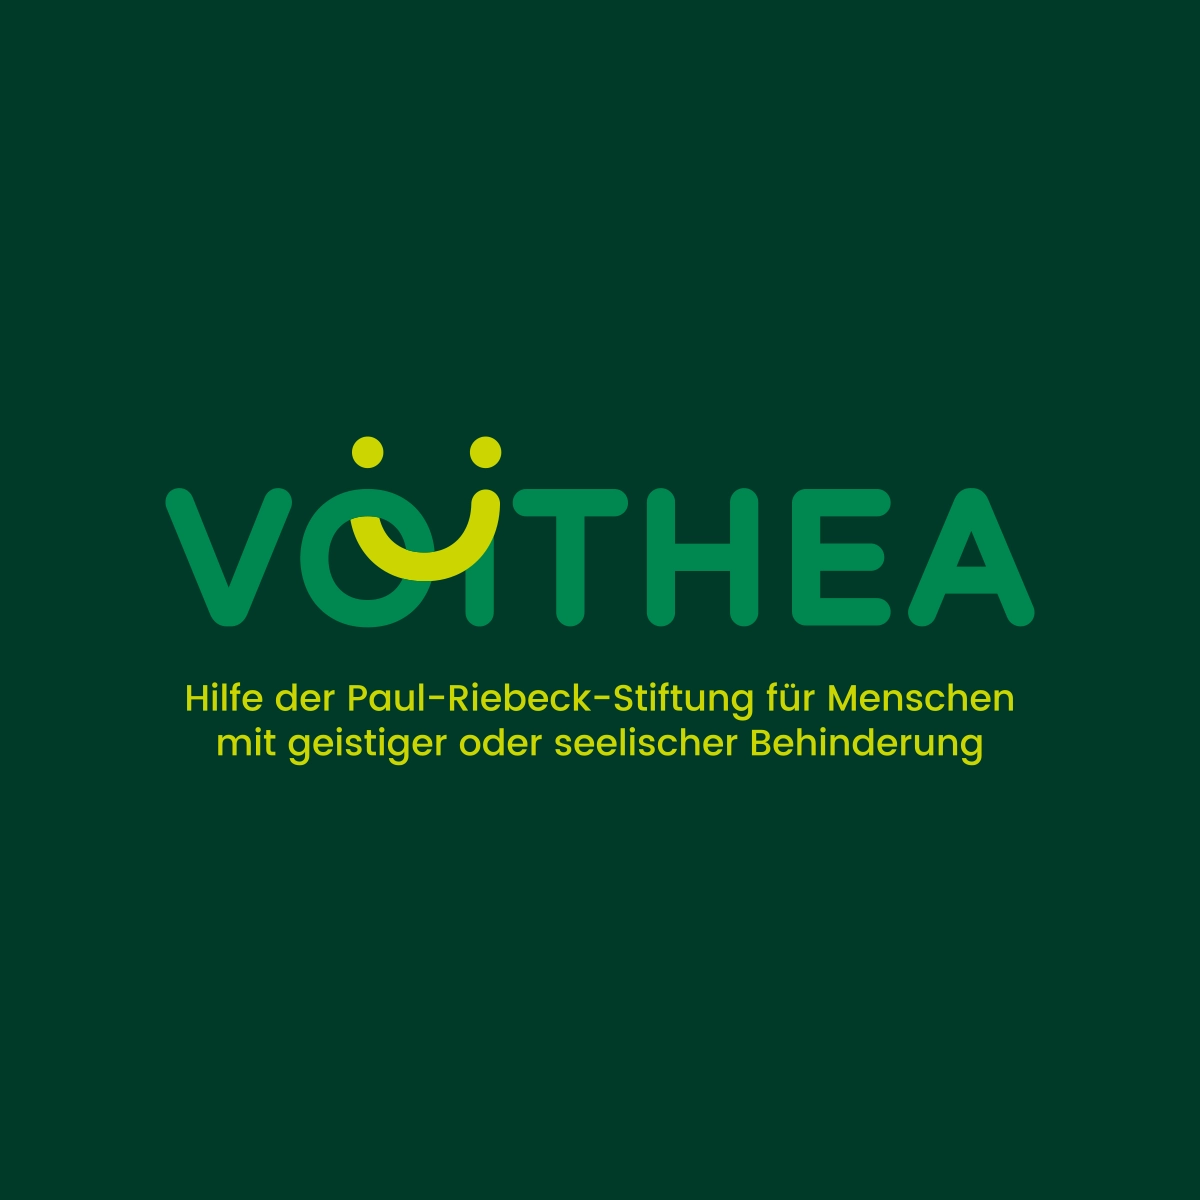 Voithea Wort-Bildmarke